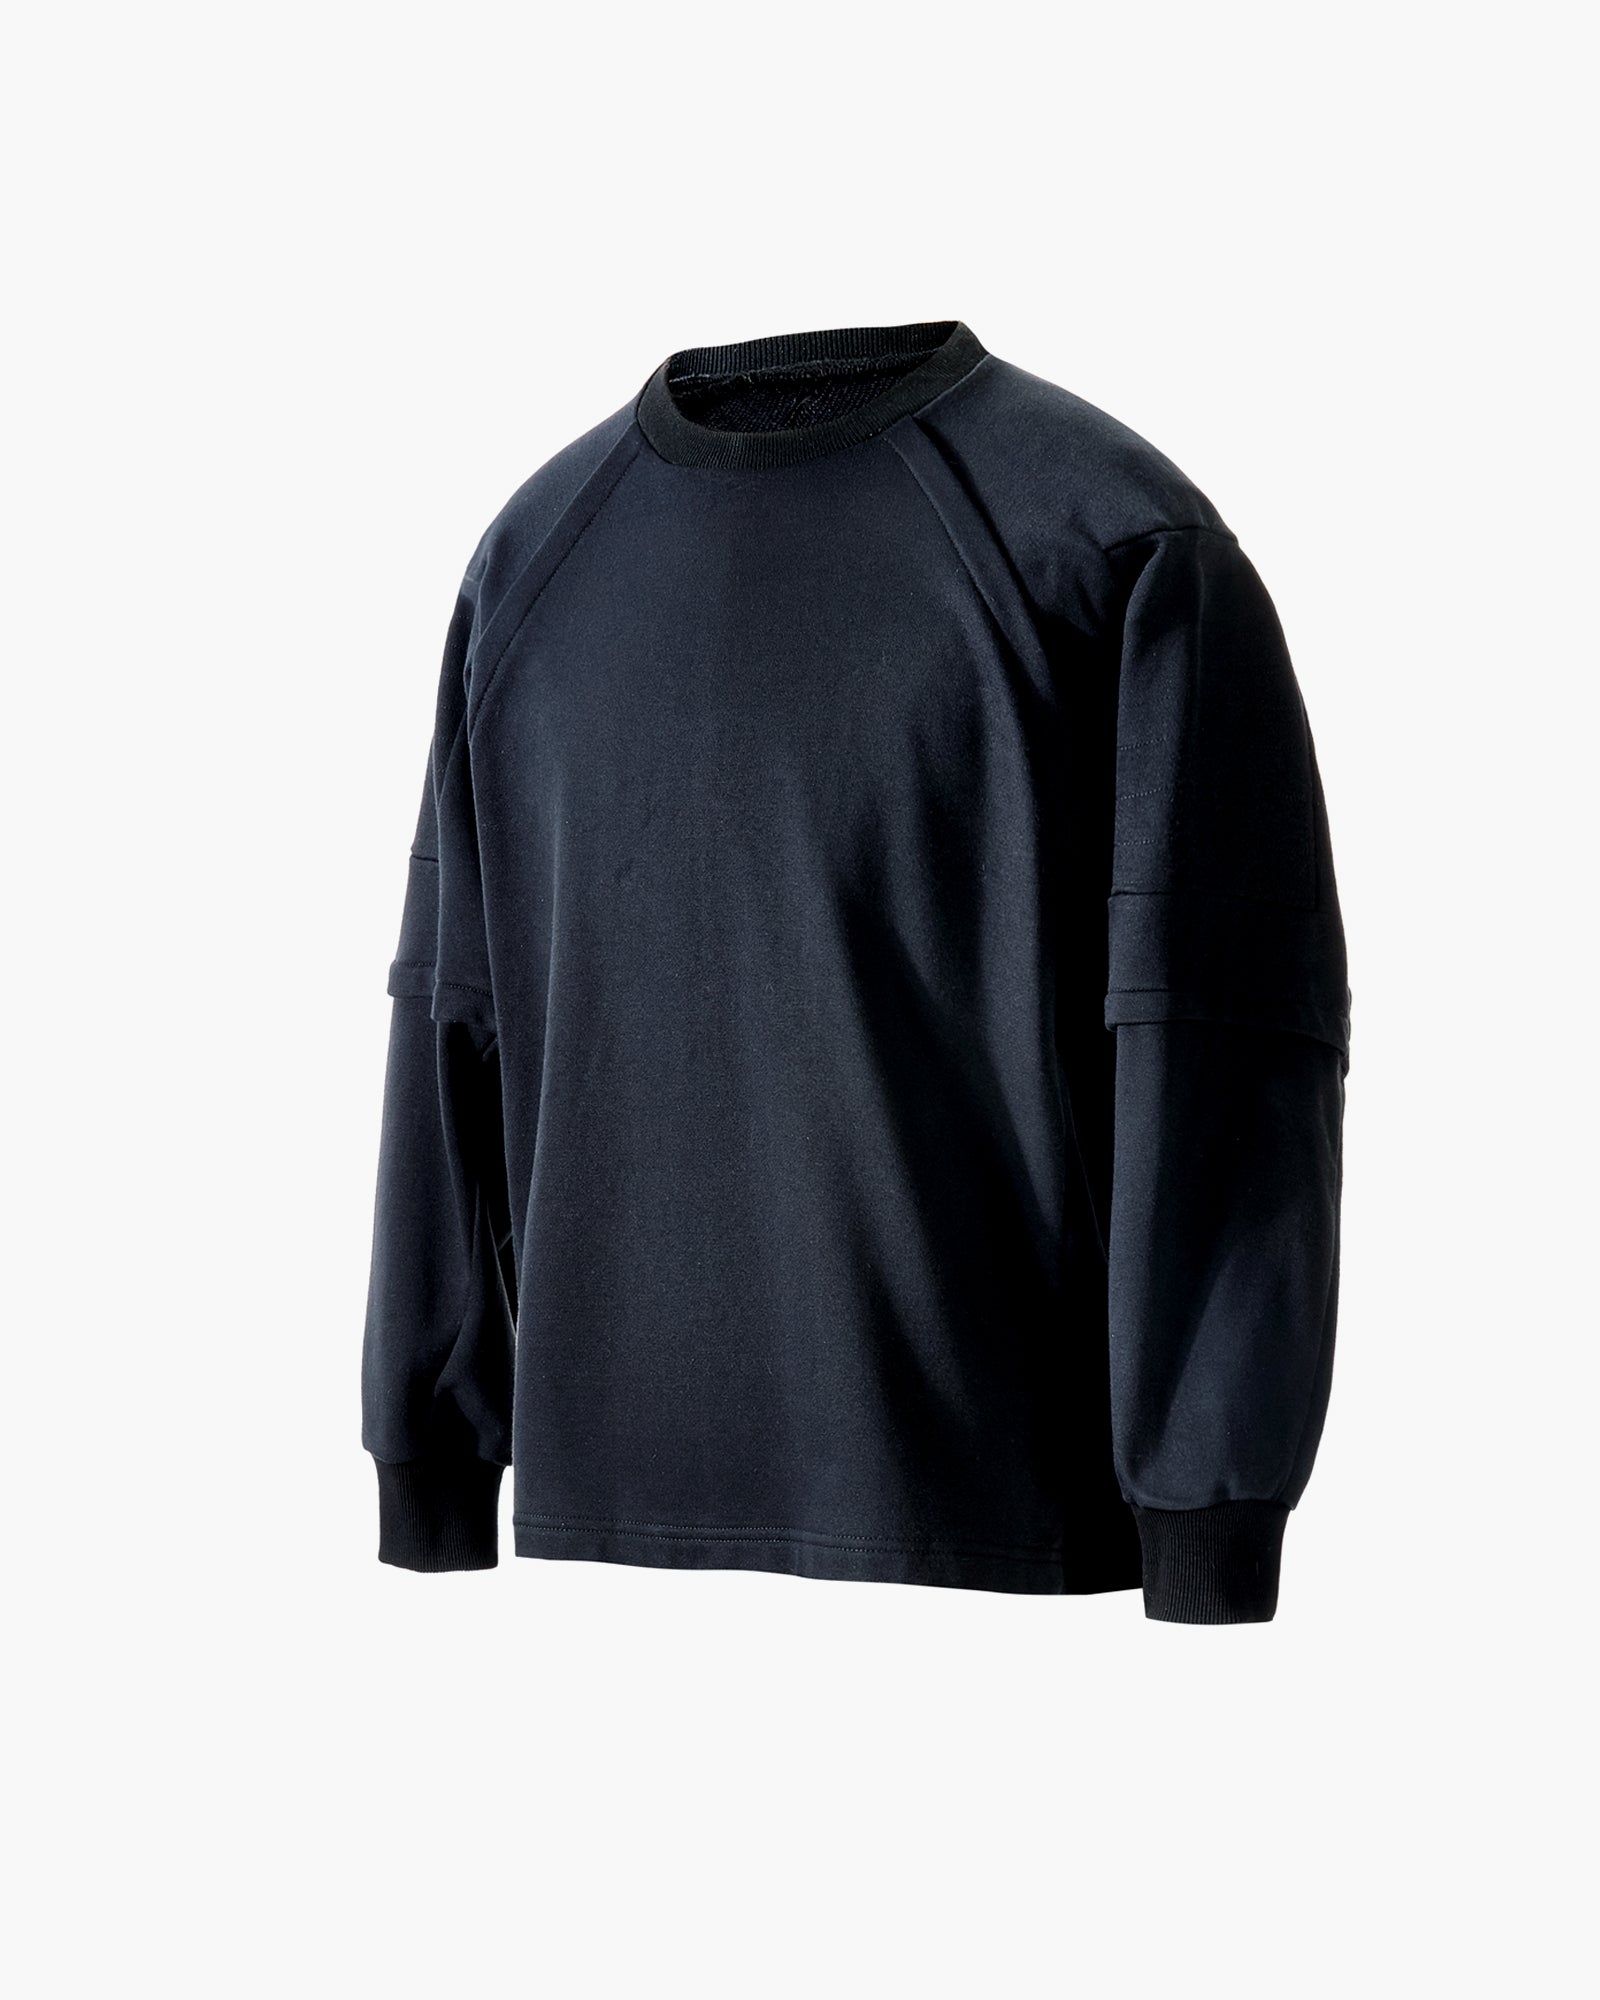 ROSEN-X Terra Sweatshirt in Eco-Cotton